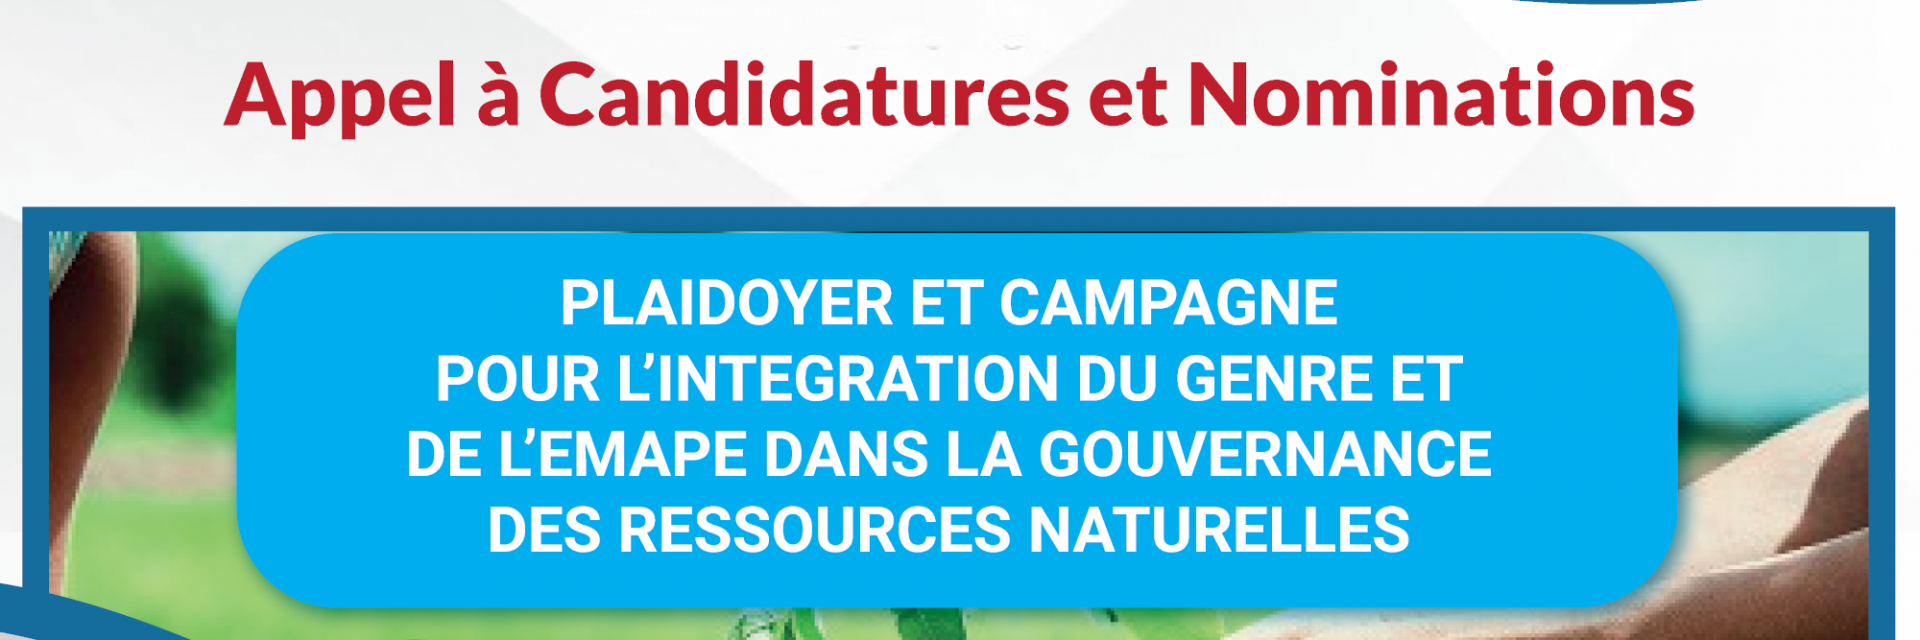 Plaidoyer et campagne pour l'intégration du genre et de l'EMAPE dans la gouvernance des ressources naturelles